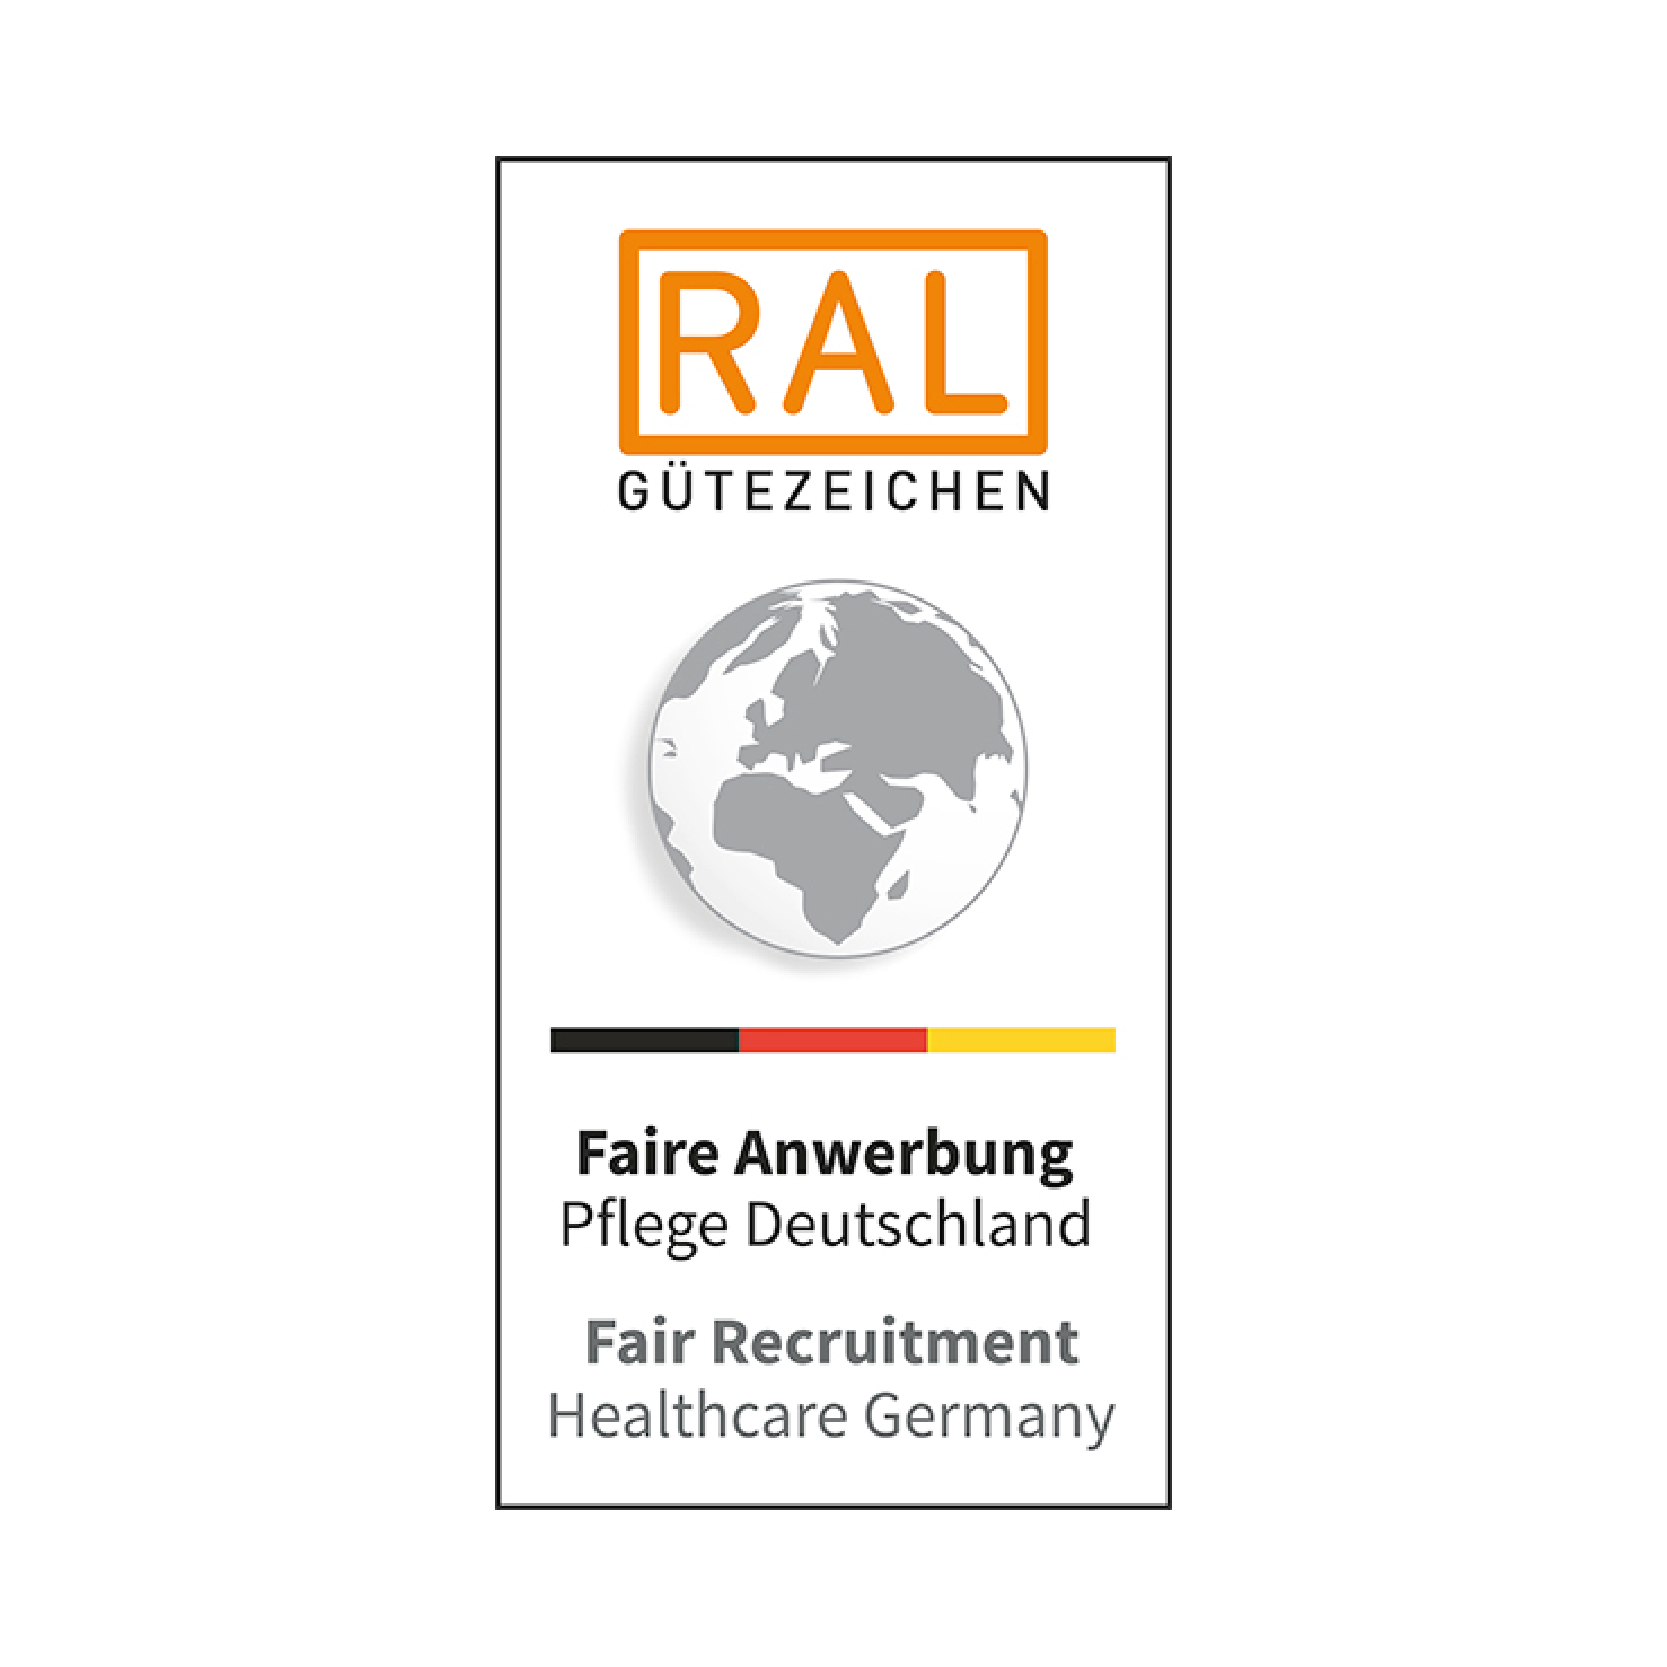 RAL Gütezeichen für die faire Anwerbung in der deutschen Pflegebranche